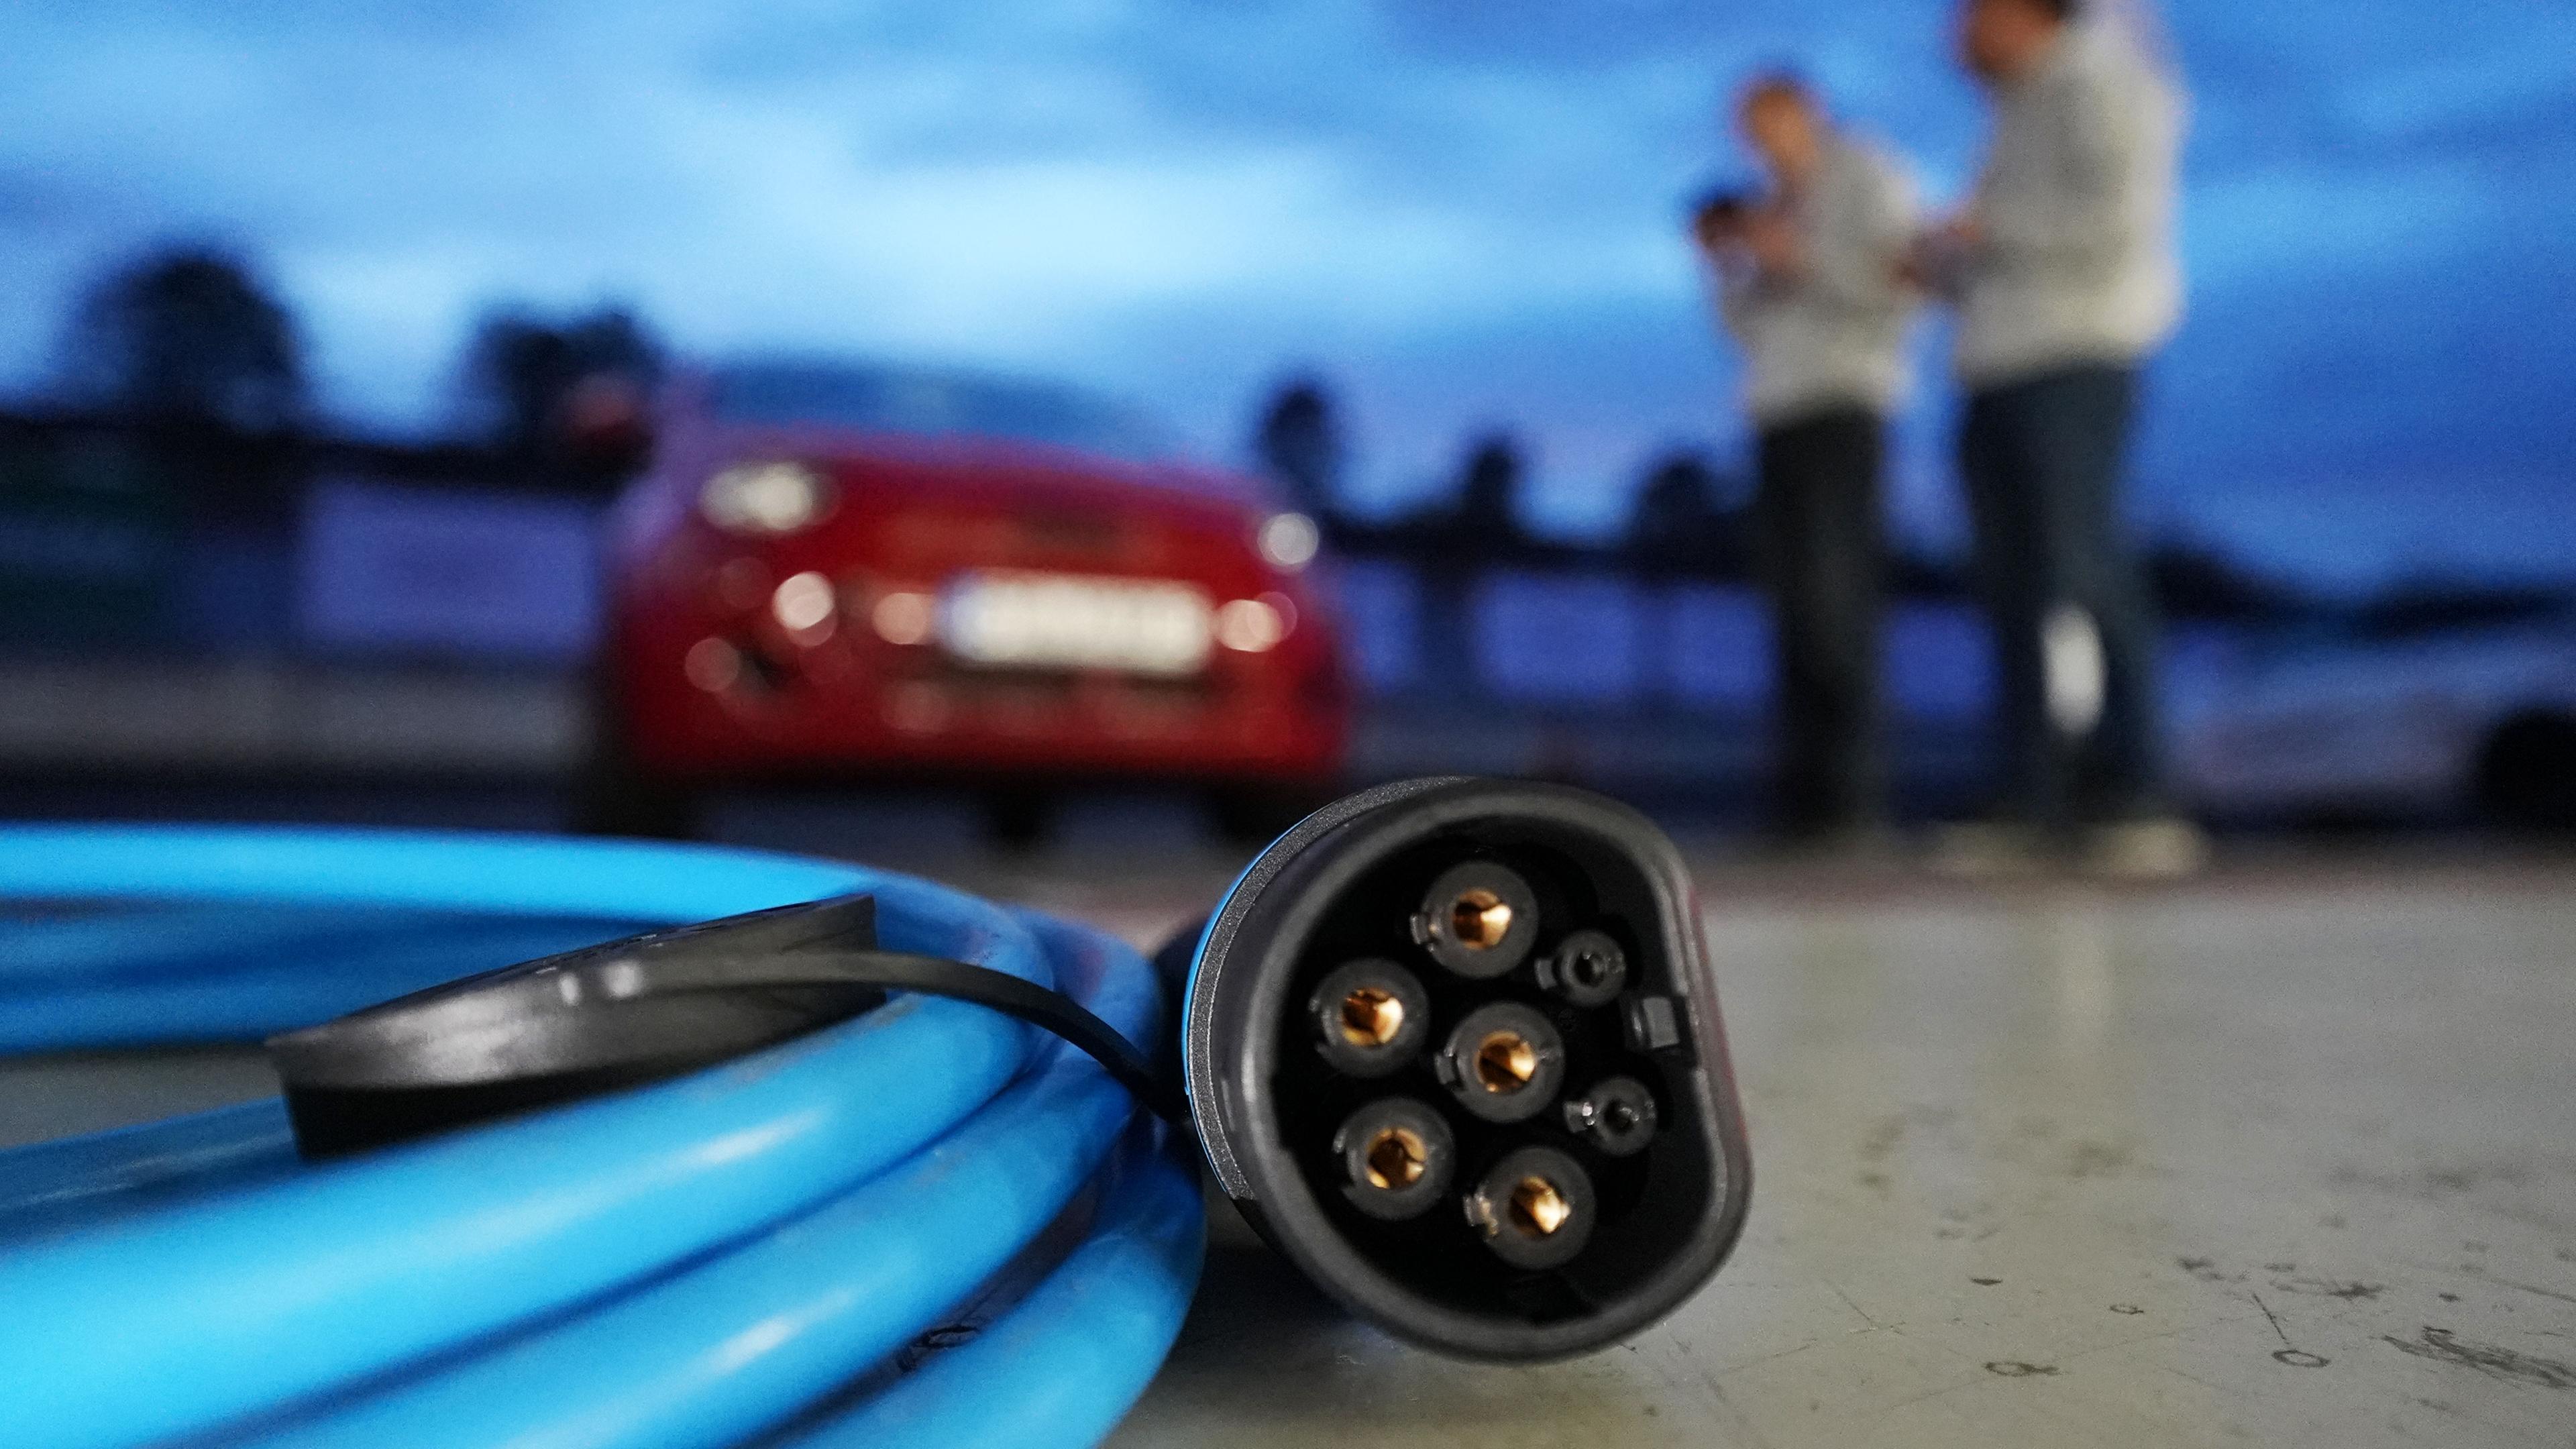 Gebrauchtes E-Auto kaufen: So testet man die Batterie - Tipps